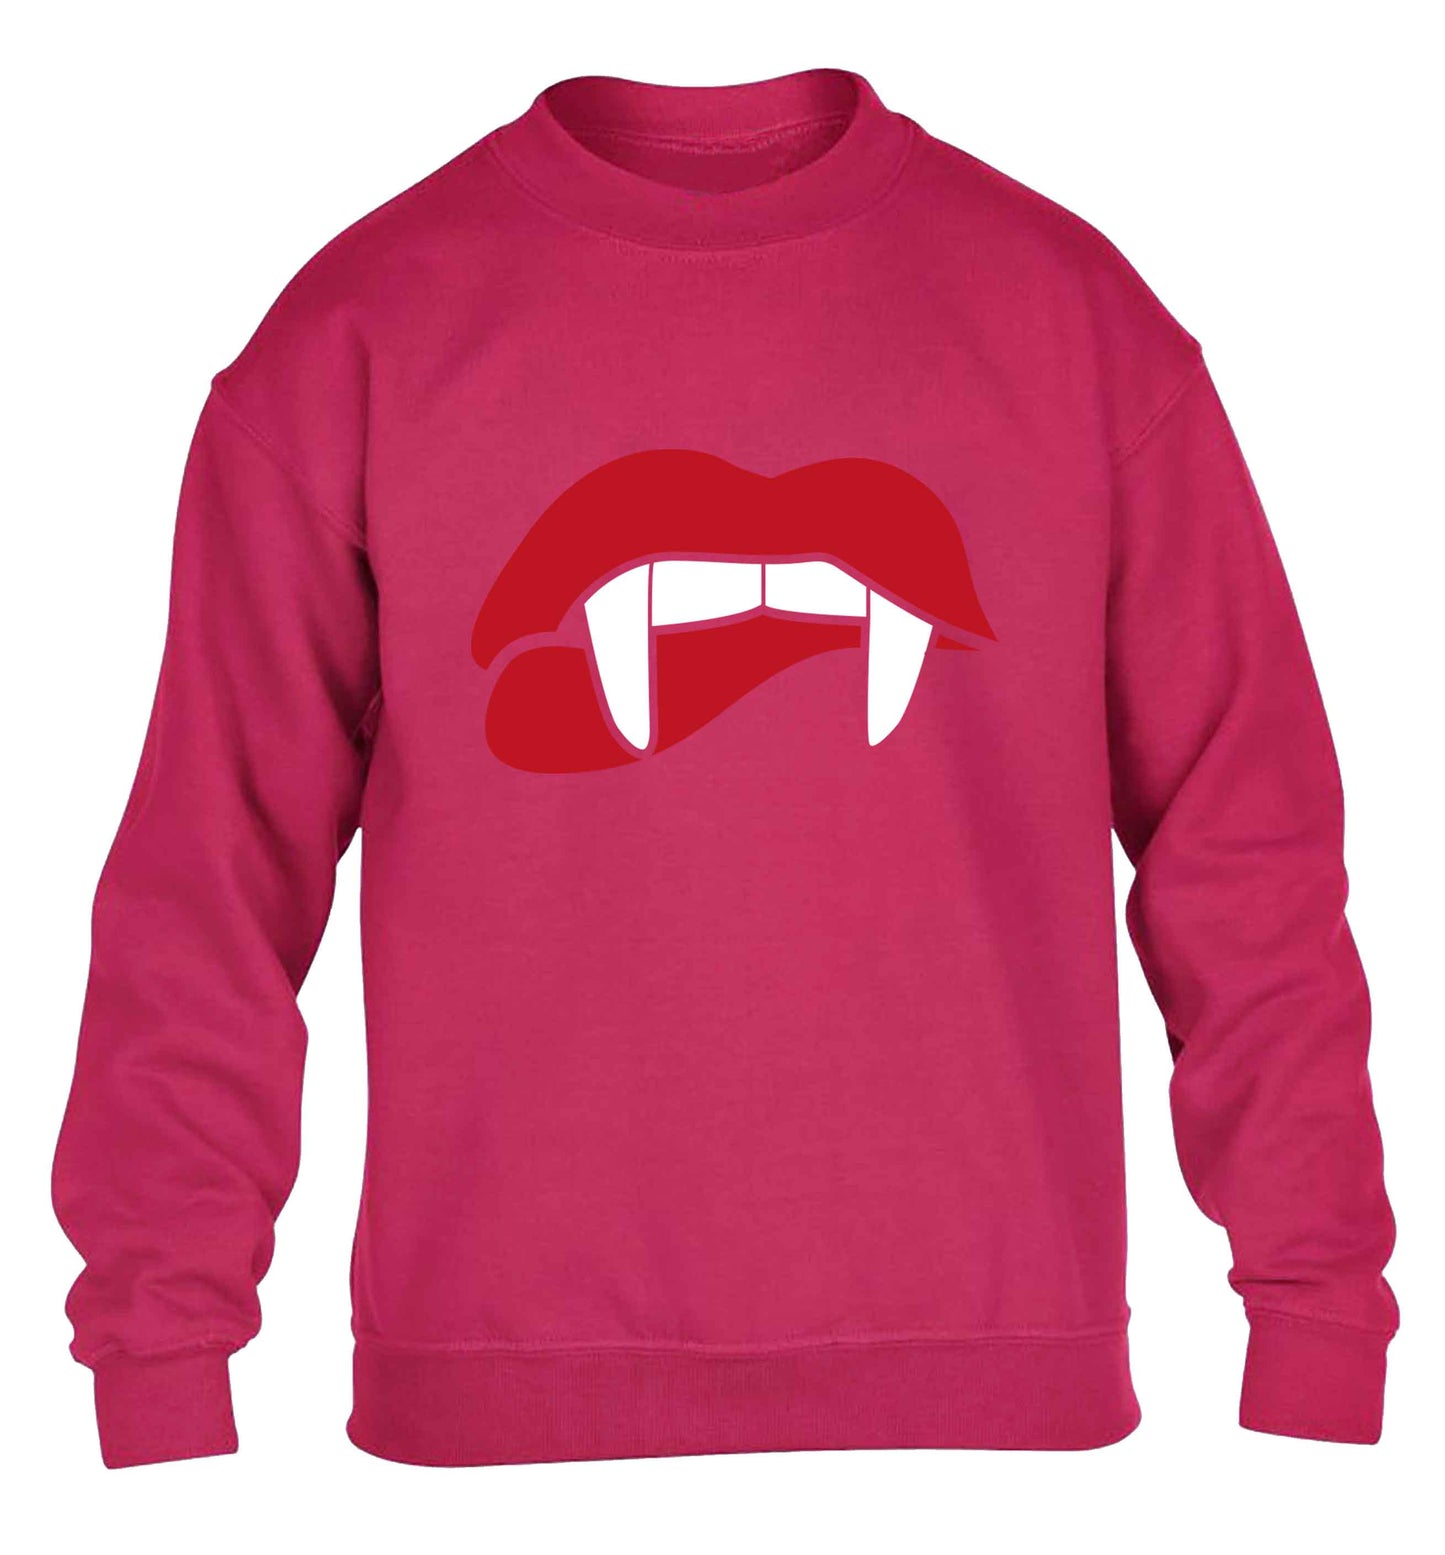 Vampire fangs children's pink sweater 12-13 Years